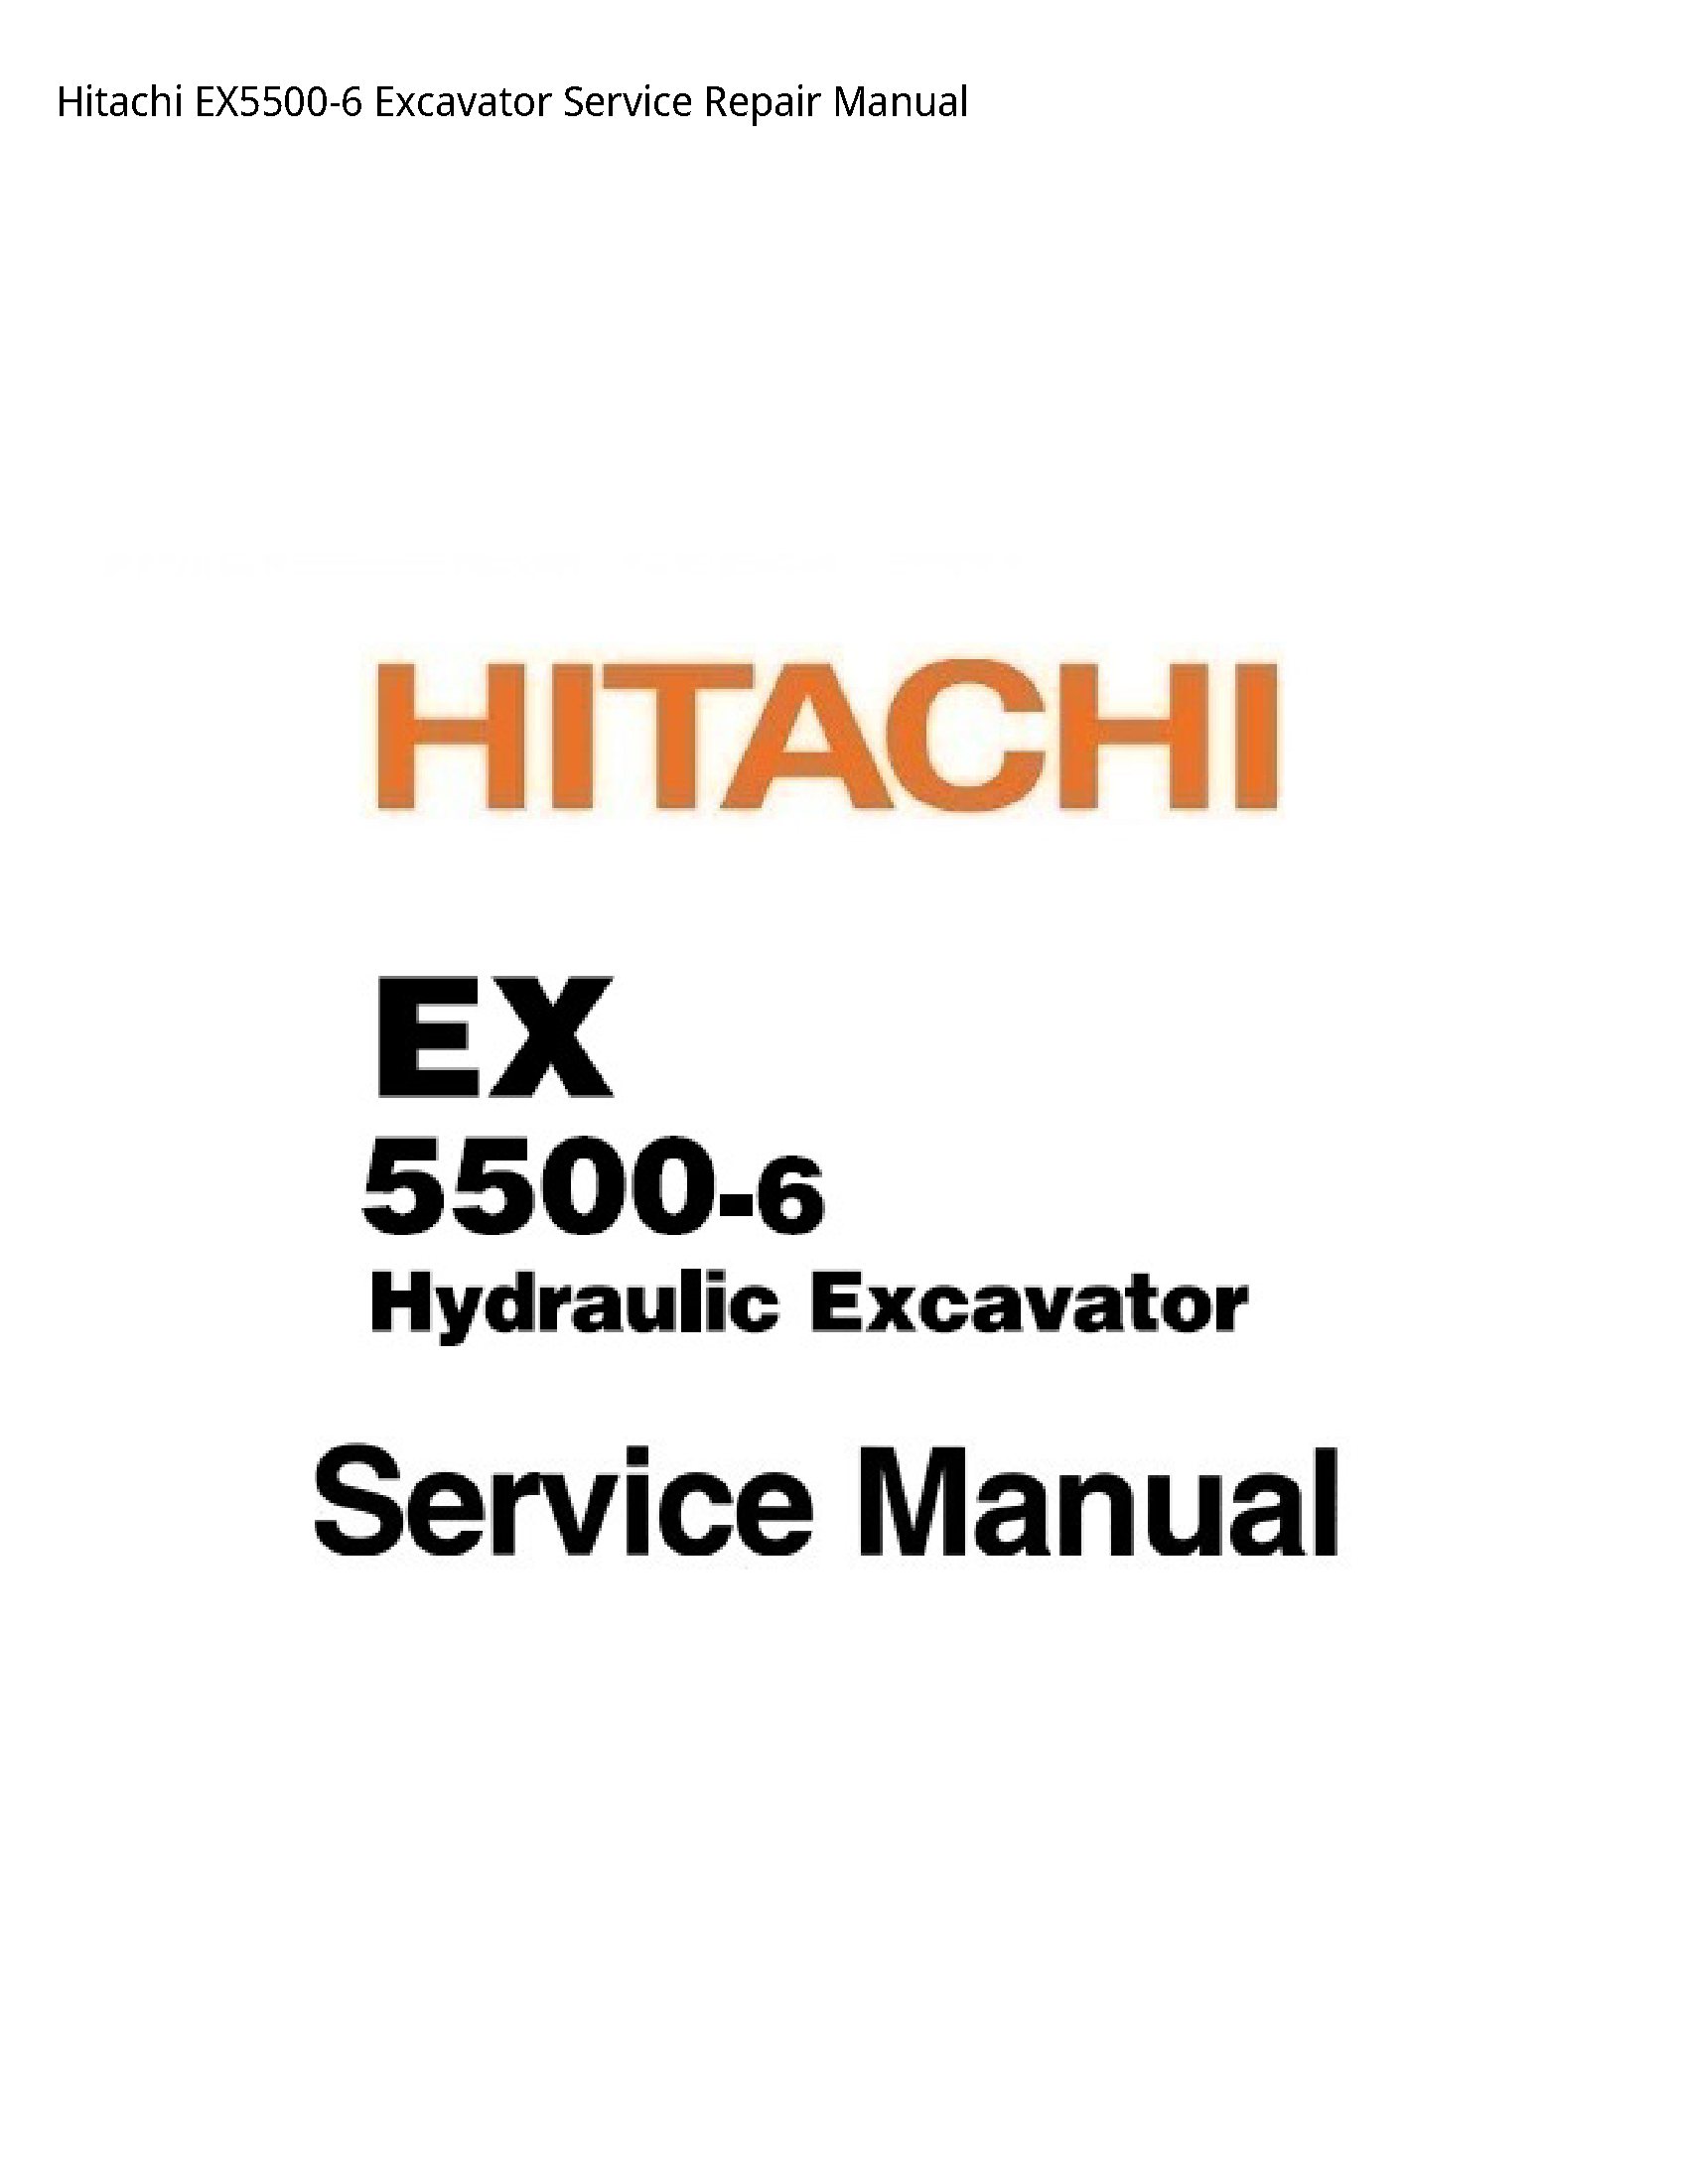 Hitachi EX5500-6 Excavator manual